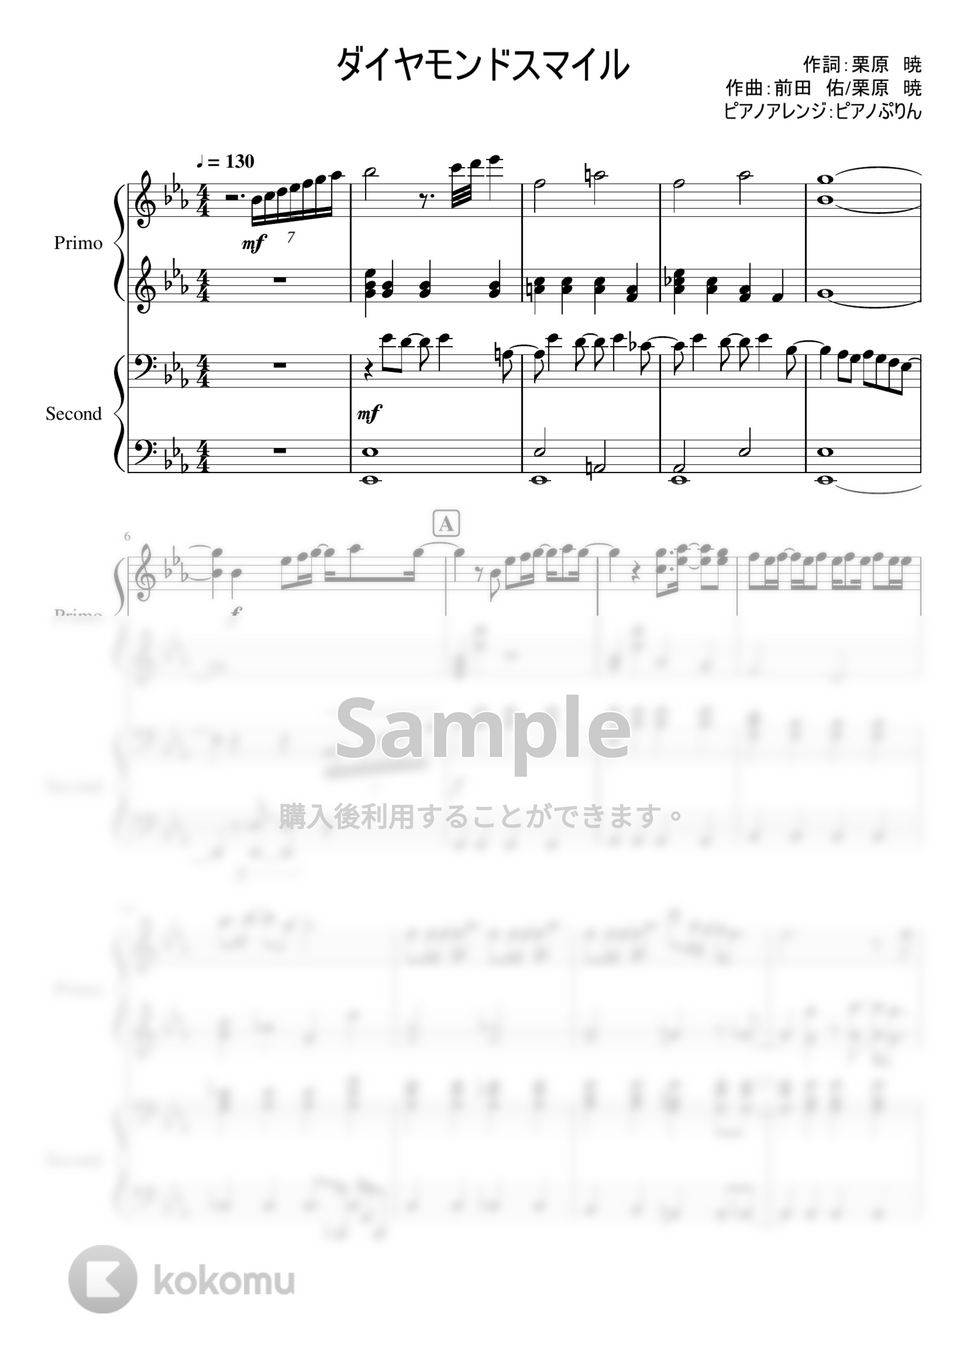 なにわ男子 - ダイヤモンドスマイル (1stアルバム「1st Love」収録曲。) by ピアノぷりん